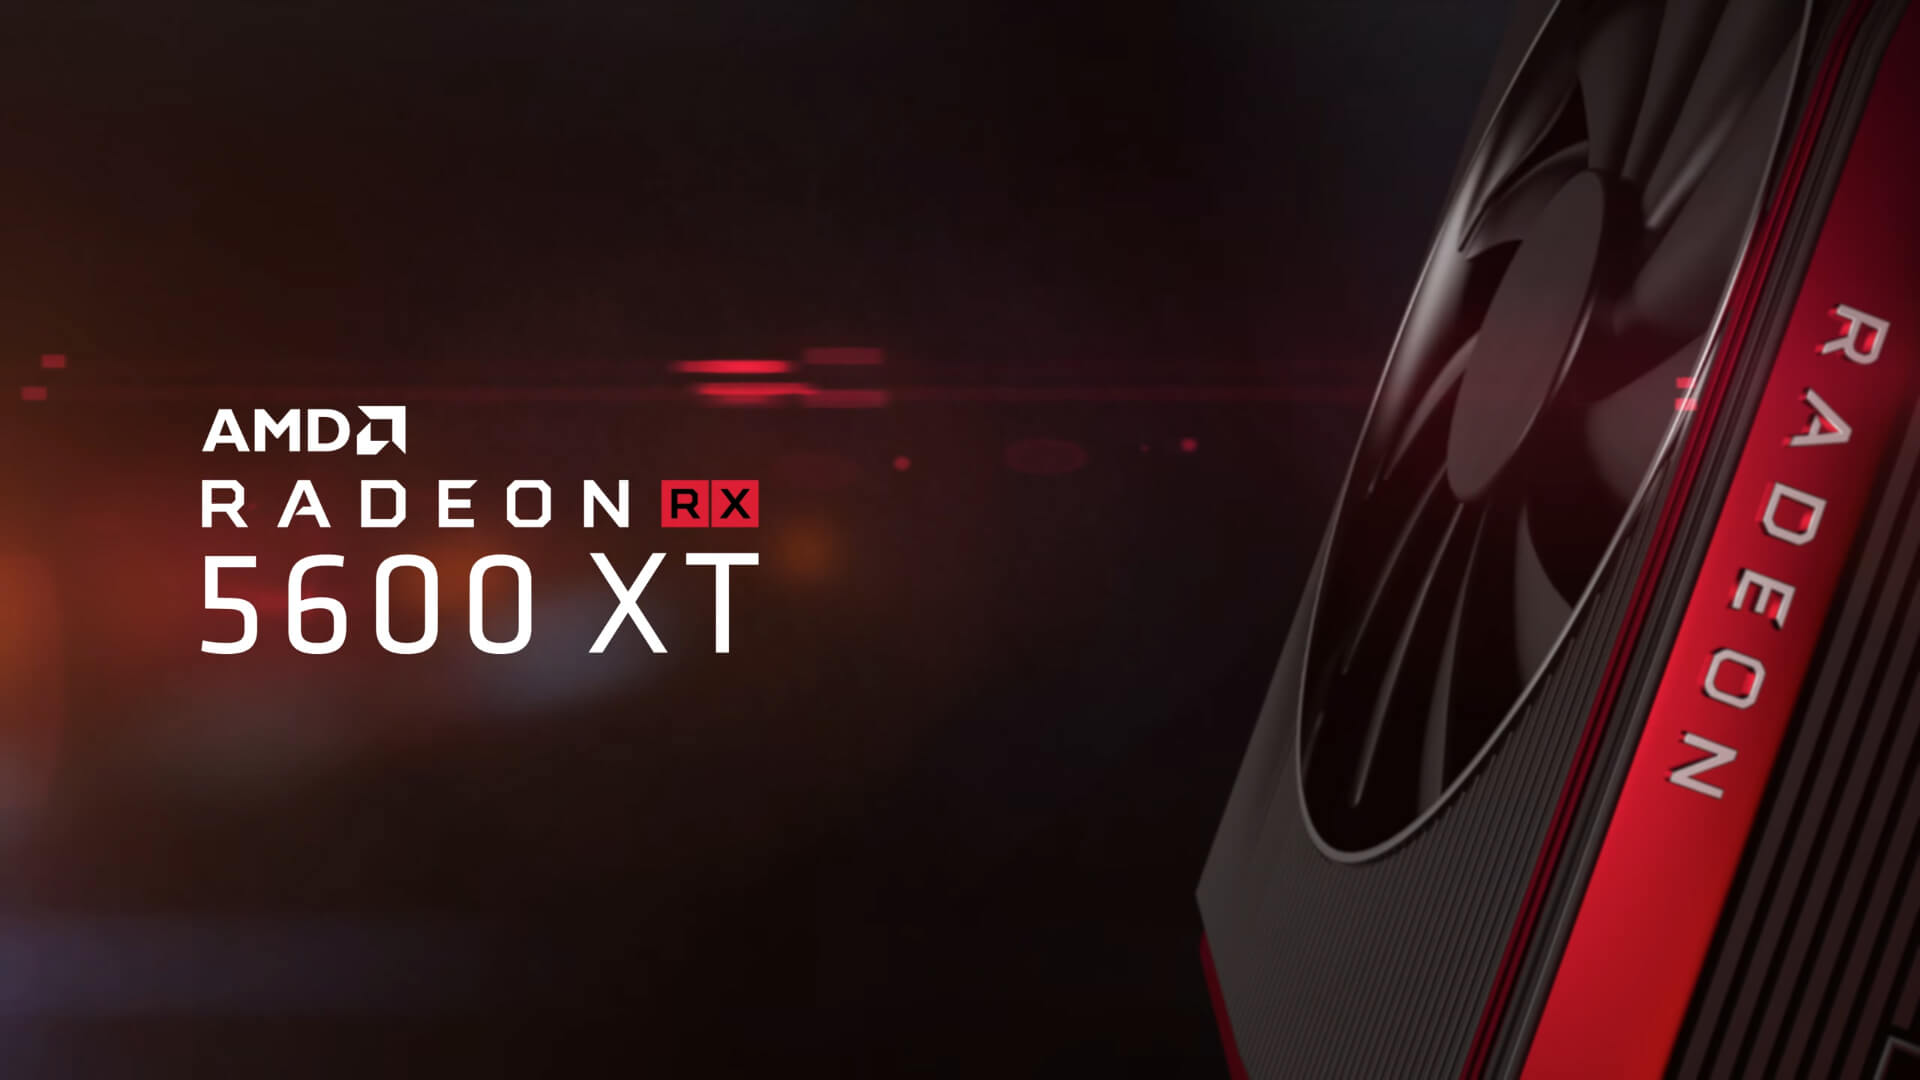 AMD представила «народную» видеокарту Radeon RX 5600 XT (с 6 GB VRAM) (фото)